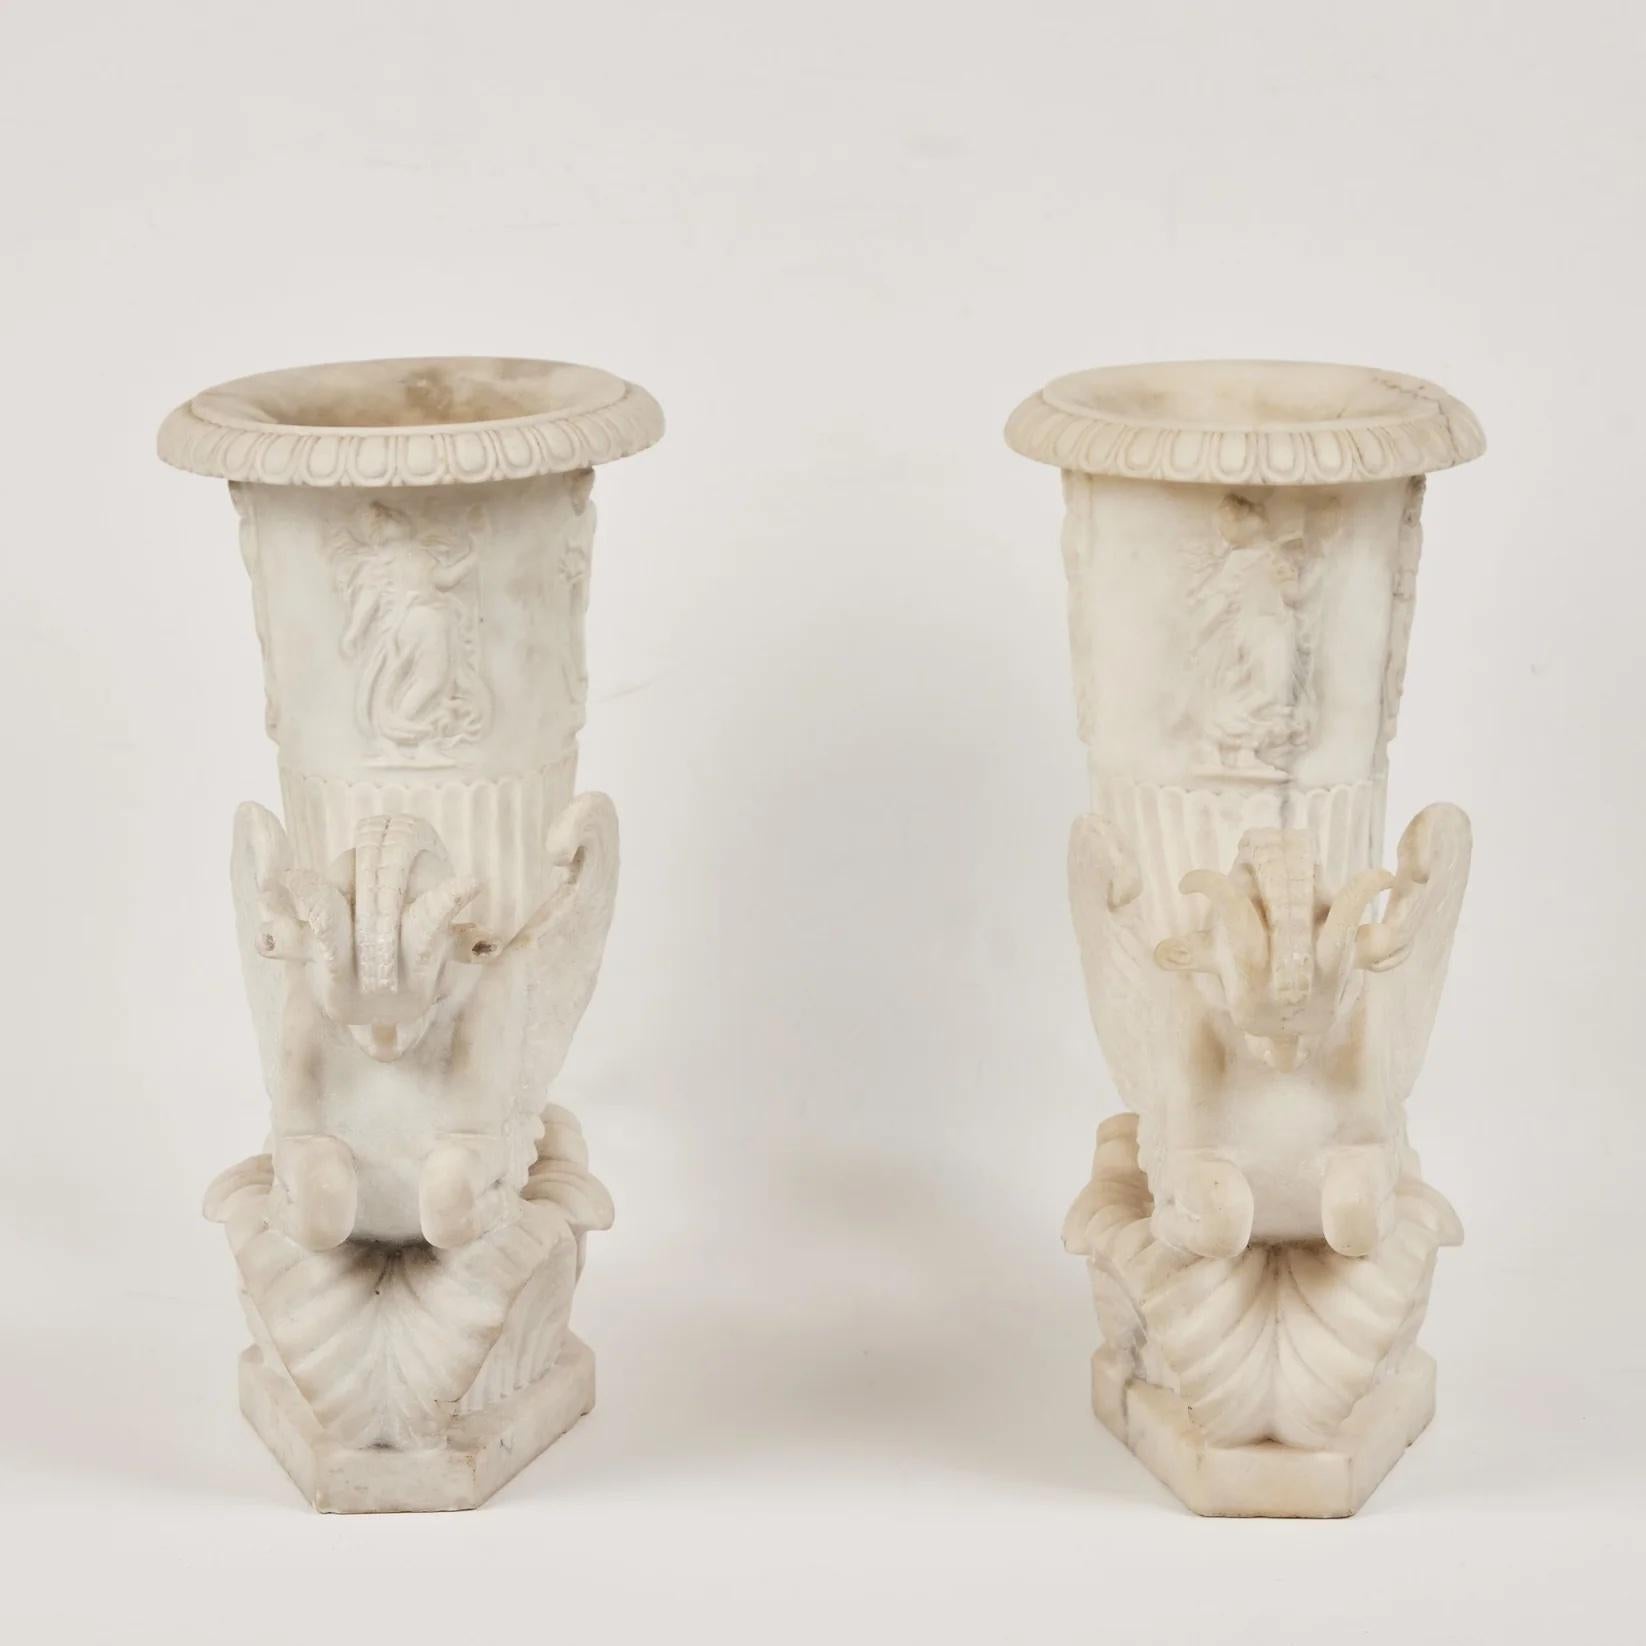 Paar wunderschön geschnitzte geflügelte Hippocampus-Kornfelder aus Carrara-Marmor mit Widderhorn, links und rechts. Jede Figur erhebt sich auf einem Sockel aus stilisierten, gewundenen Blättern und endet in Vasen, die mit reliefierten Musen- oder